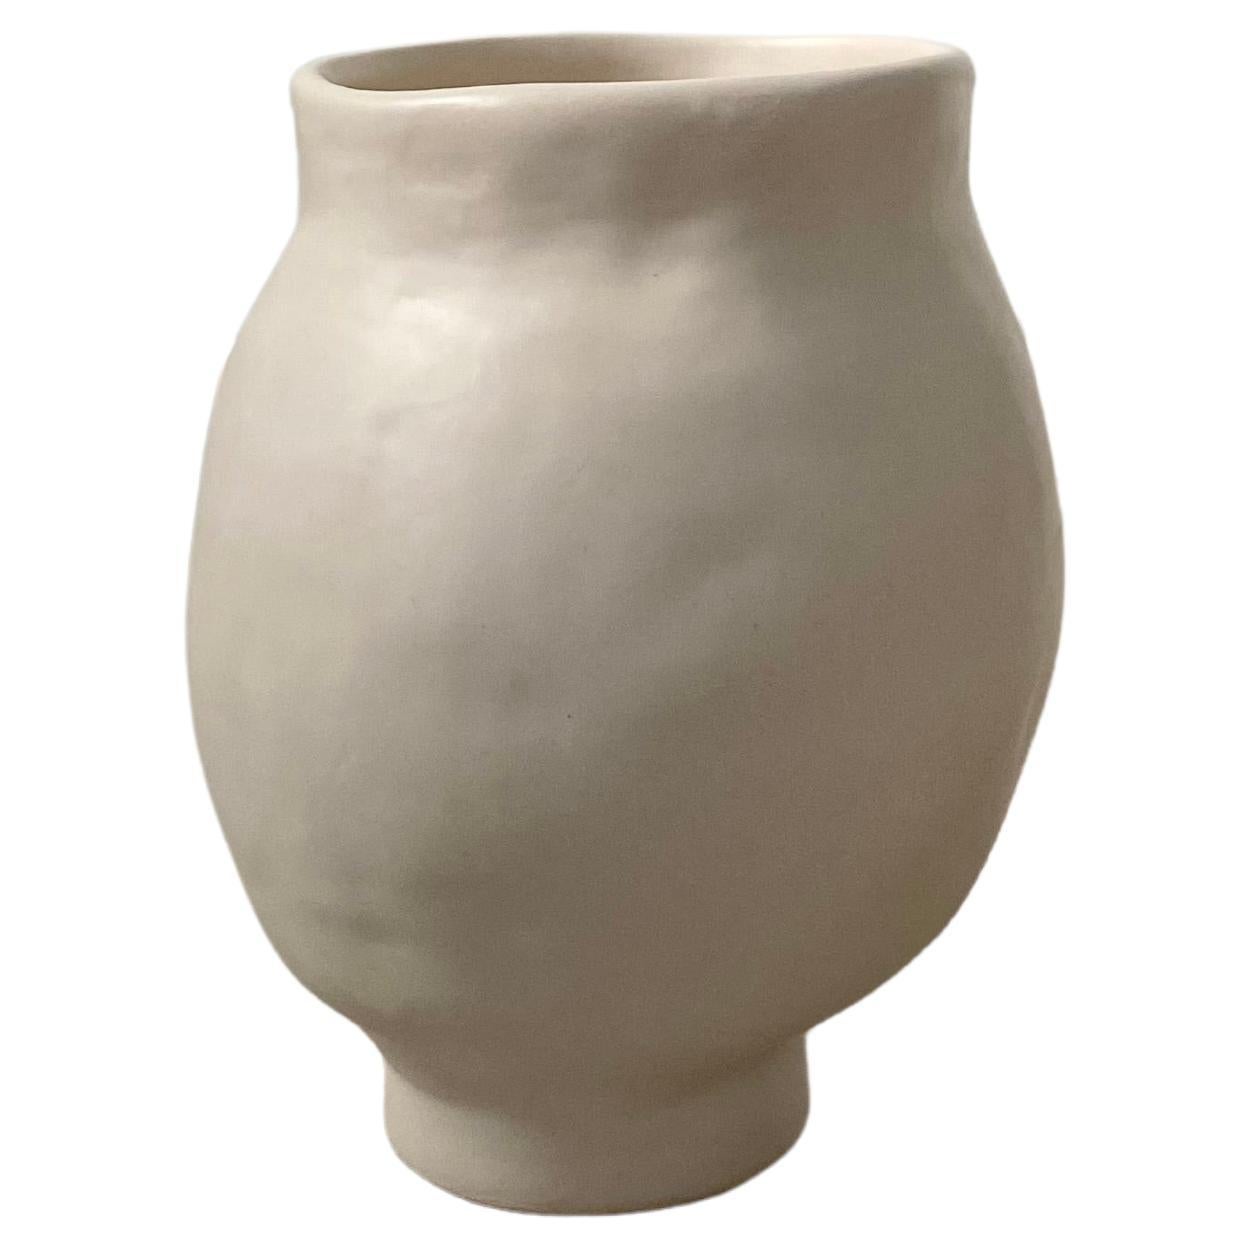 Grand vase en céramique fait à la main de style neutre décoré de manière minimaliste Wabi Sabi